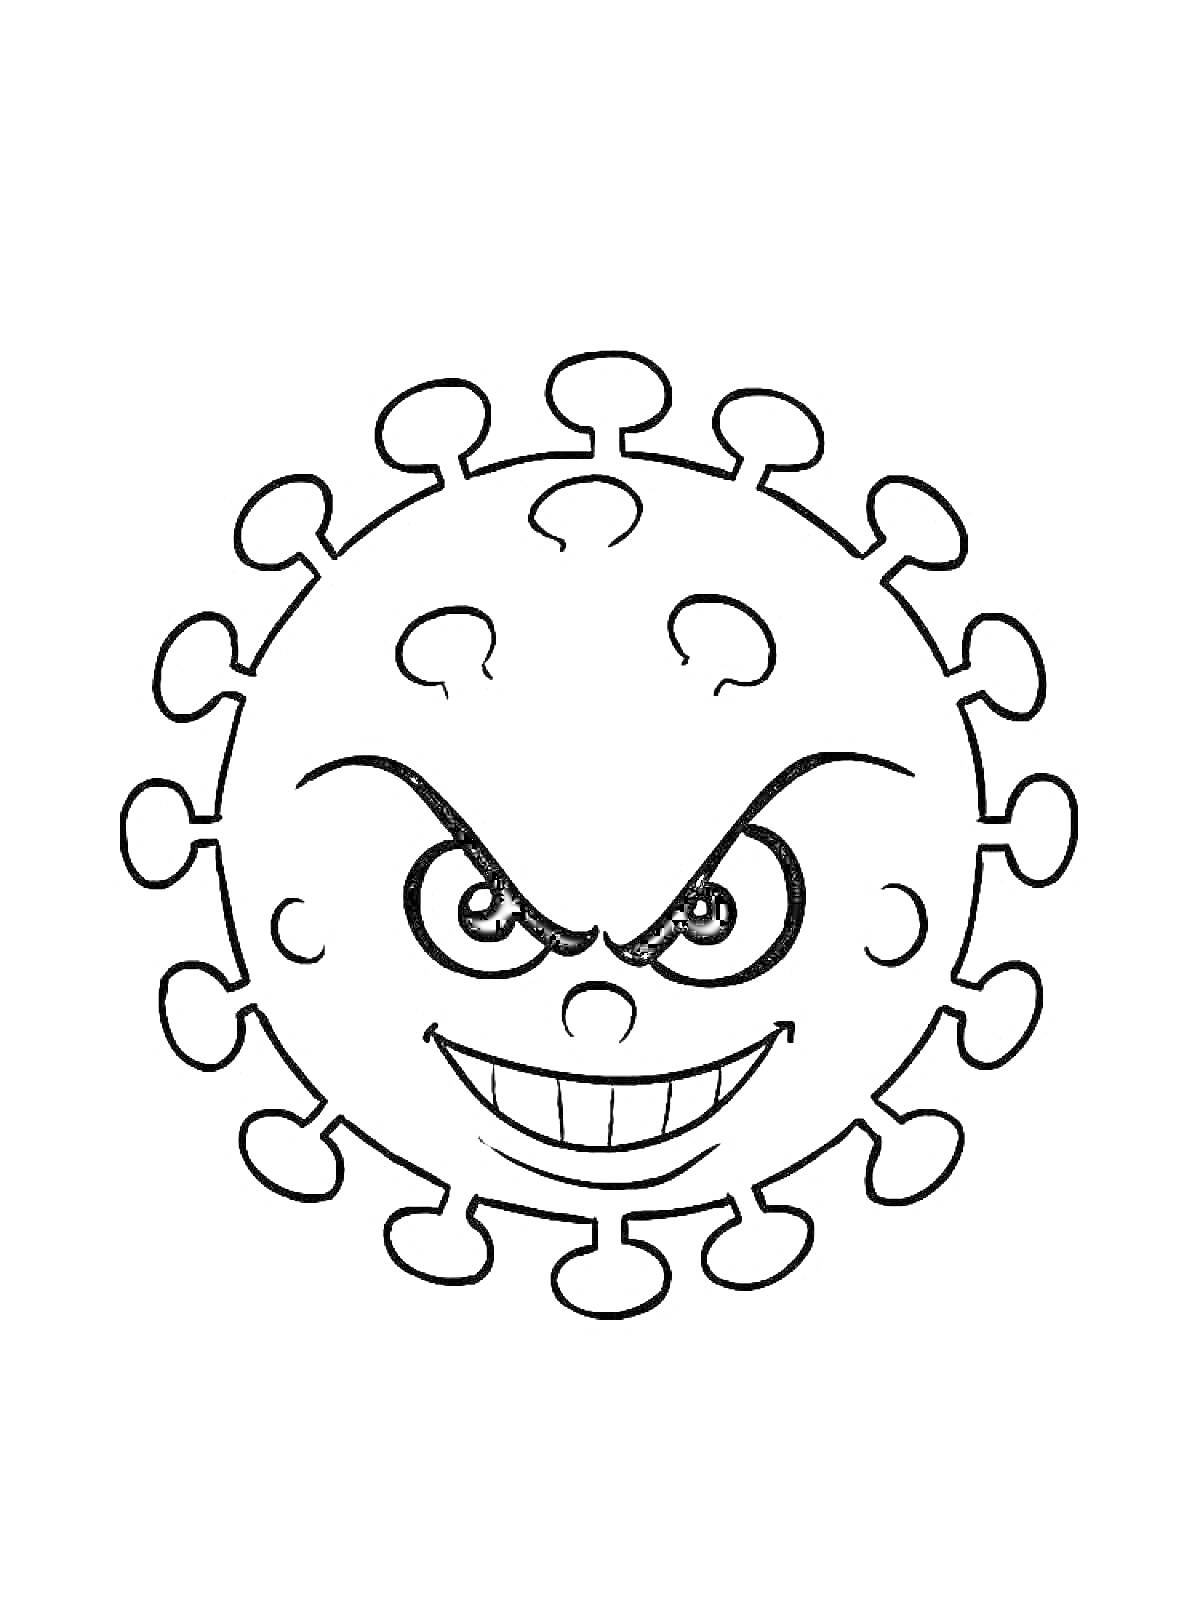 Изображение коронавируса с сердитыми глазами и улыбкой